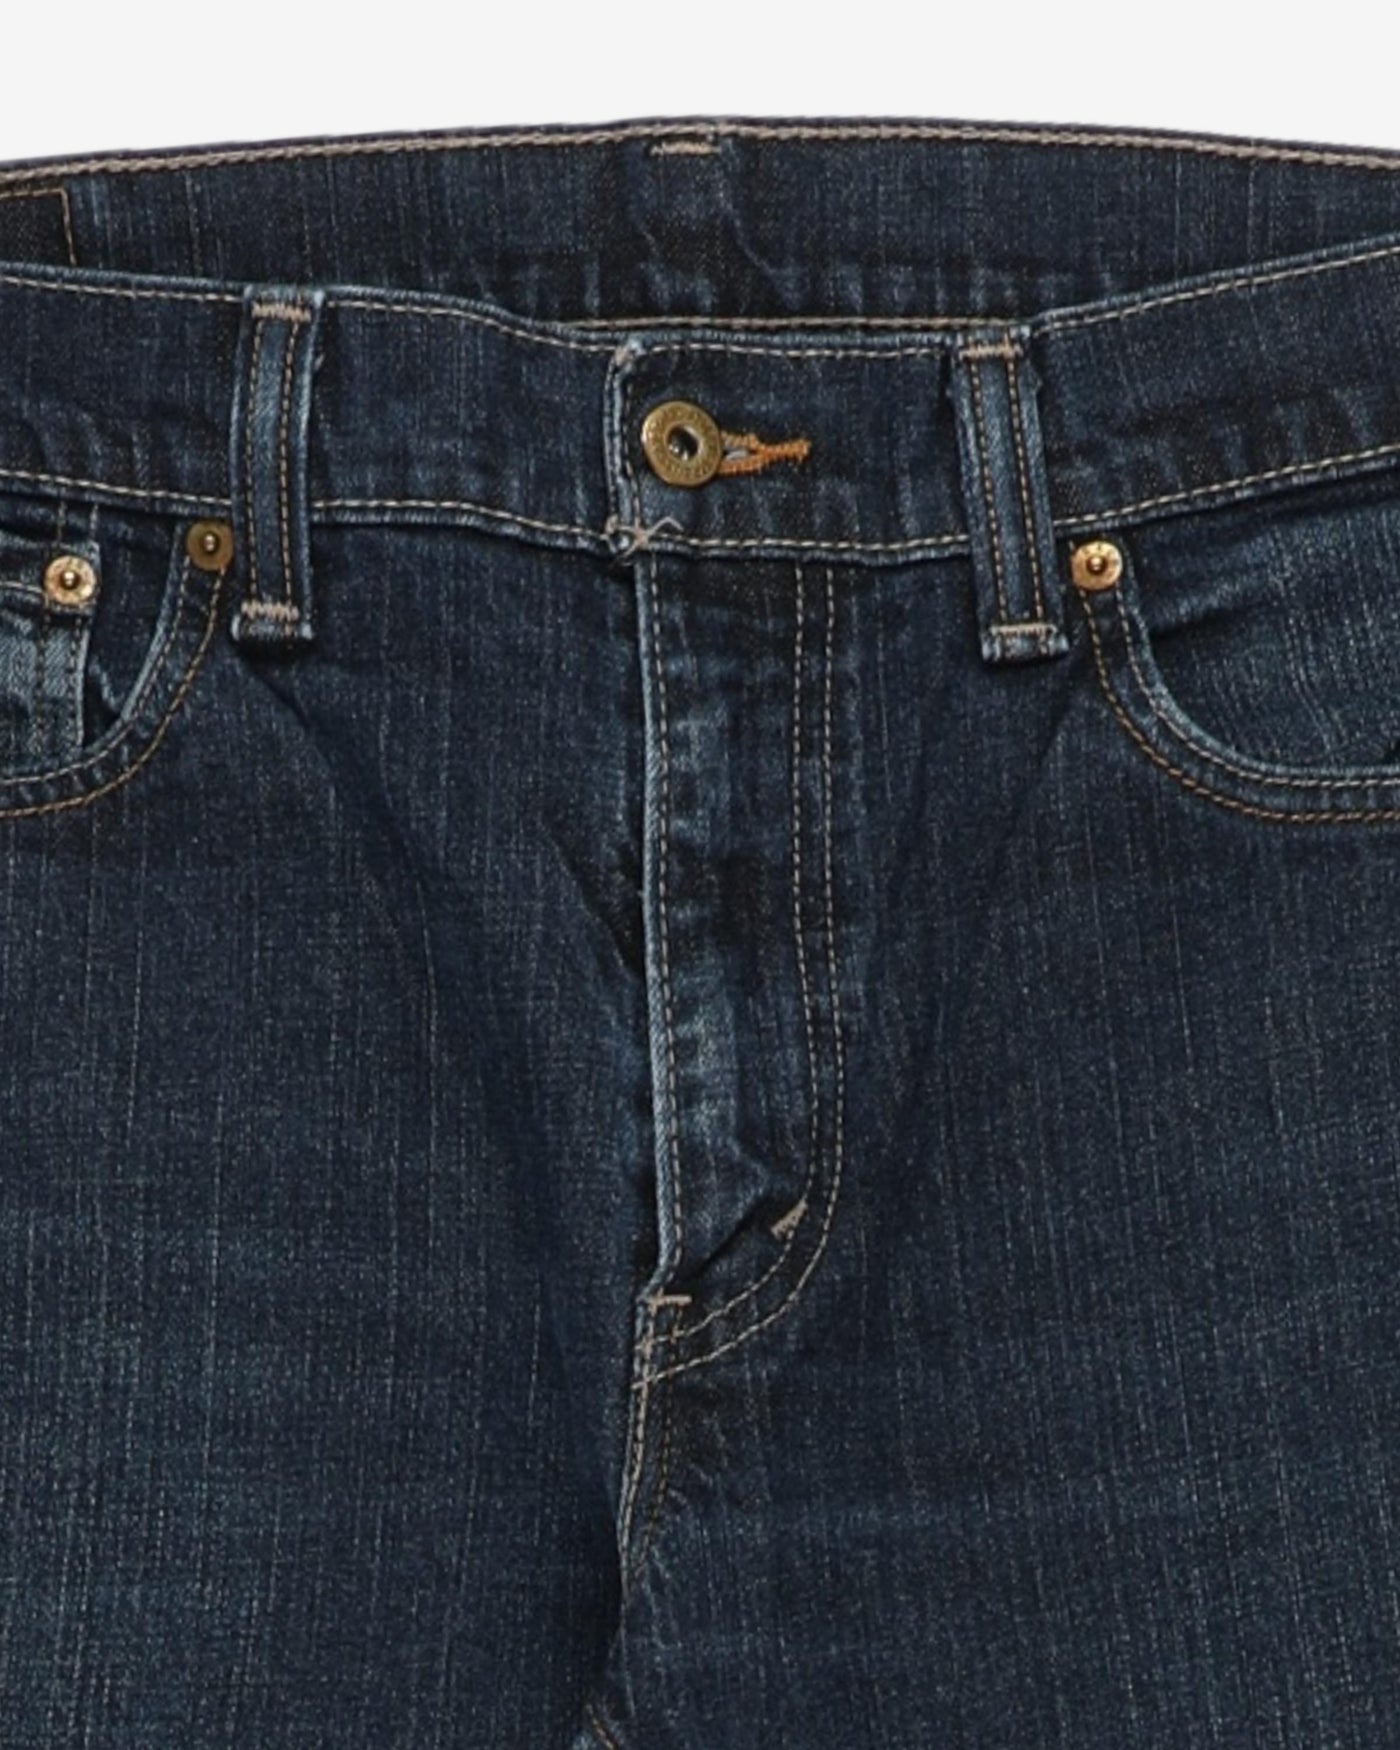 Levi's 505 Denim Dark Blue Jeans - W35 L30